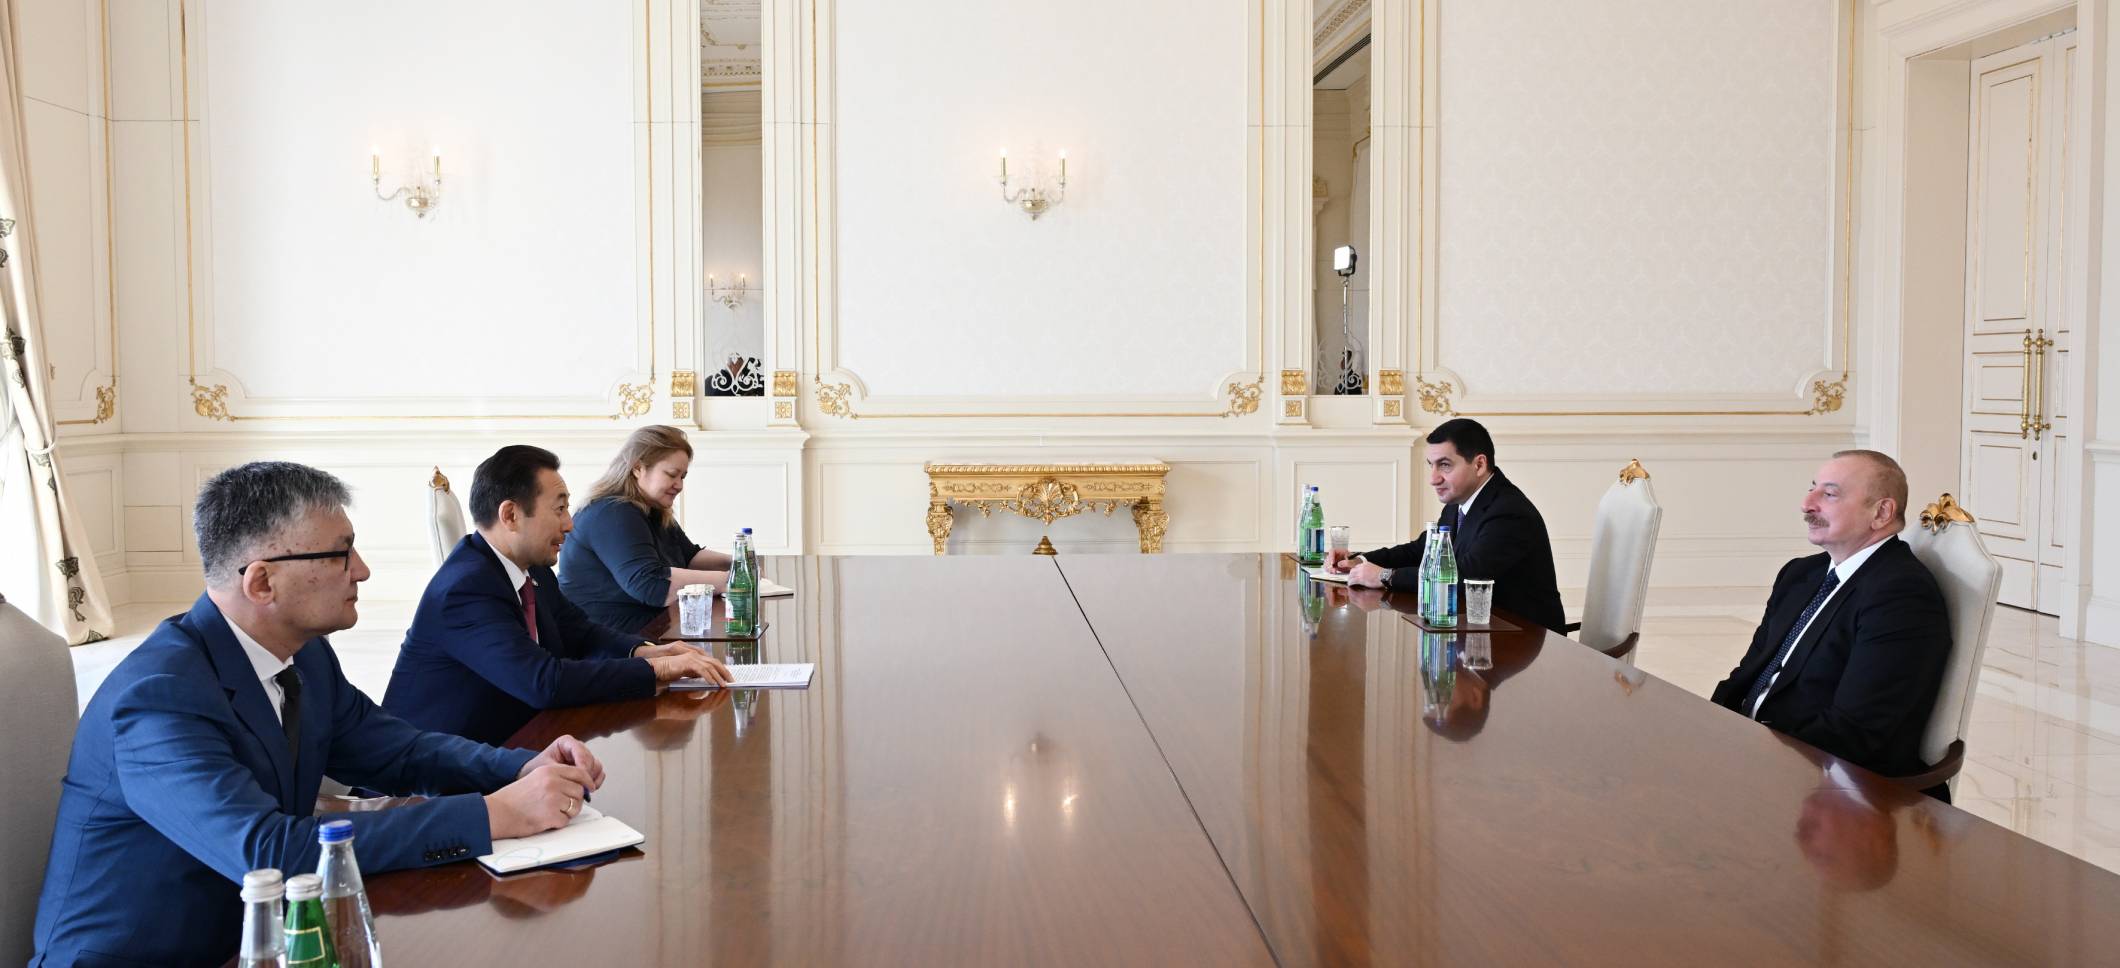 Ильхам Алиев принял генерального секретаря Совещания по взаимодействию и мерам доверия в Азии